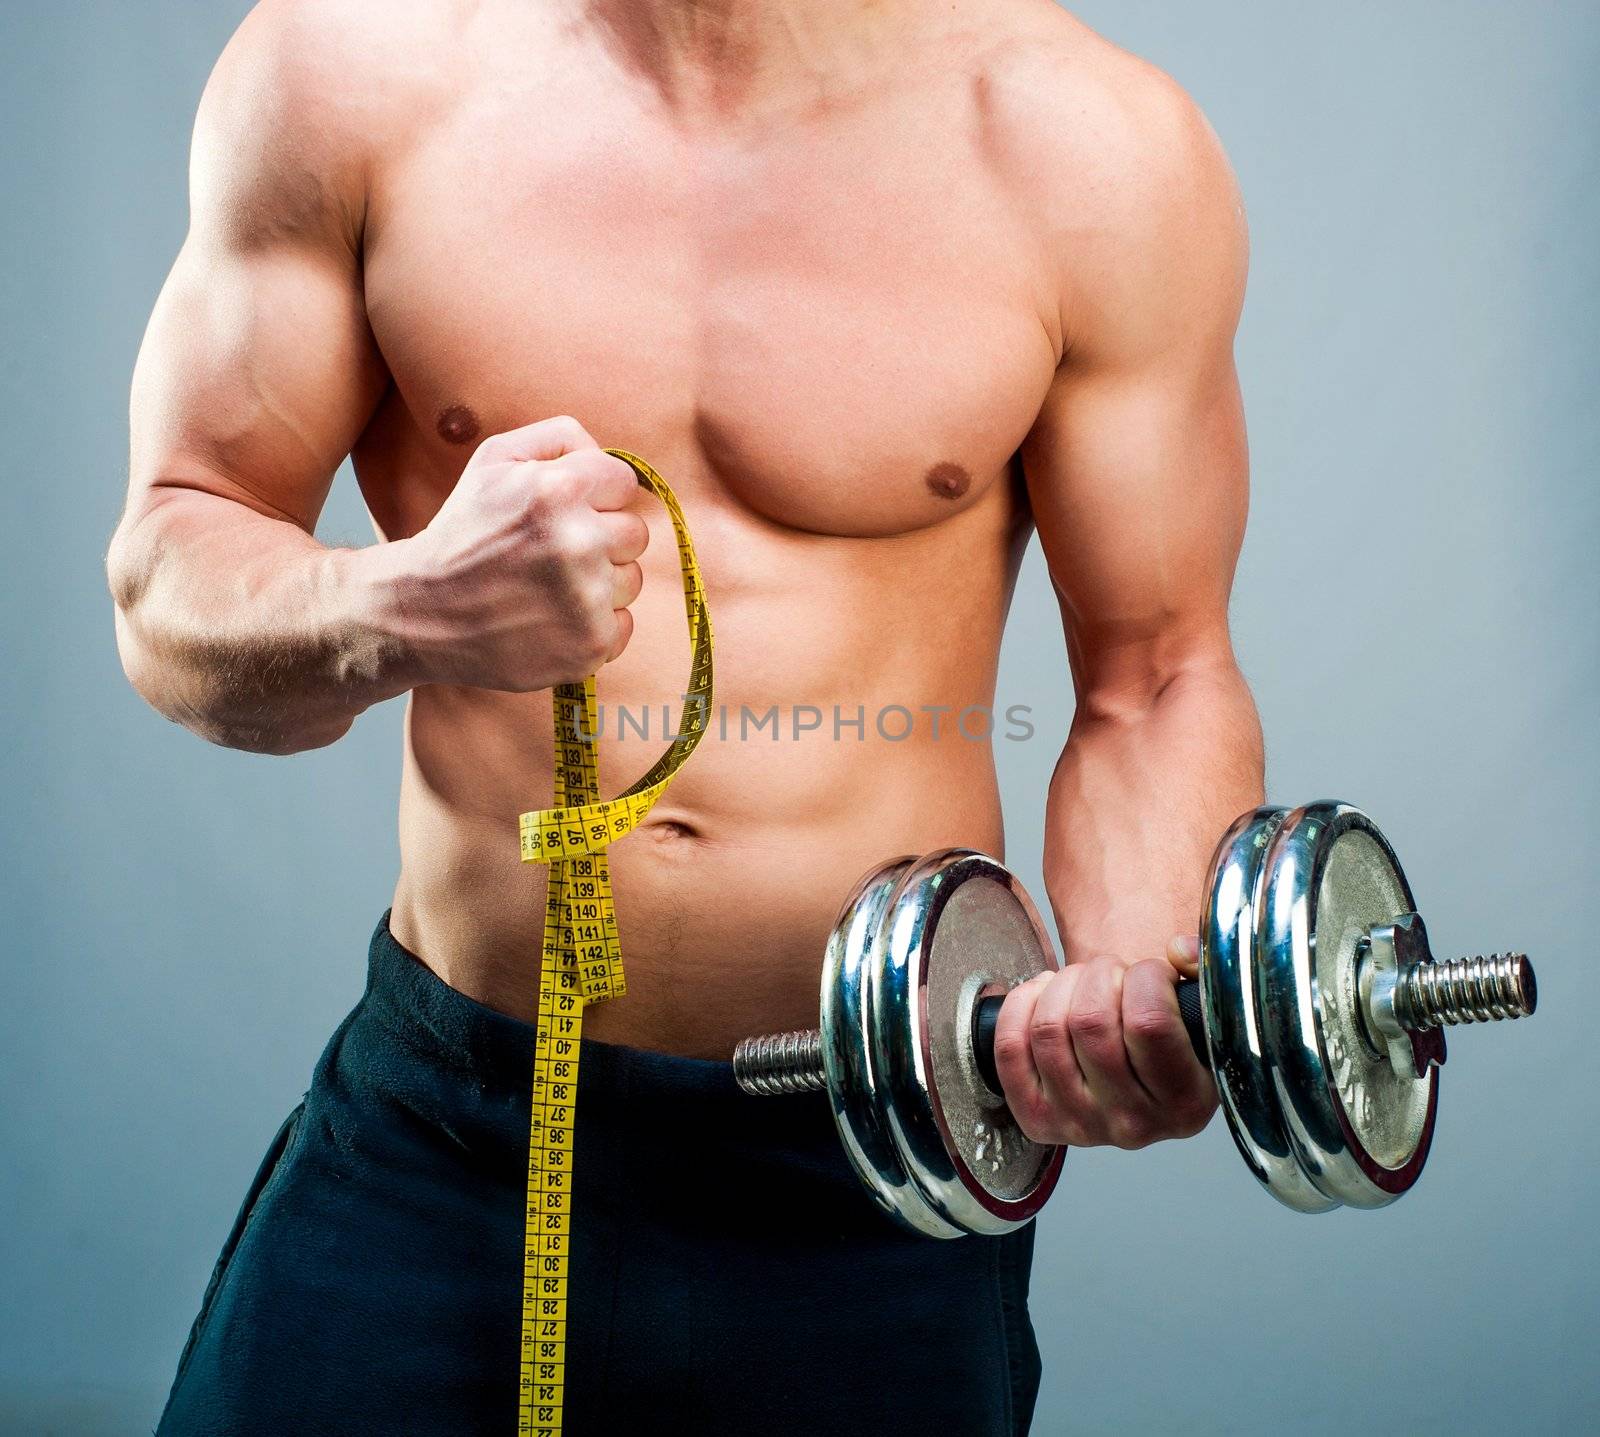 man measuring bicepsc by GekaSkr